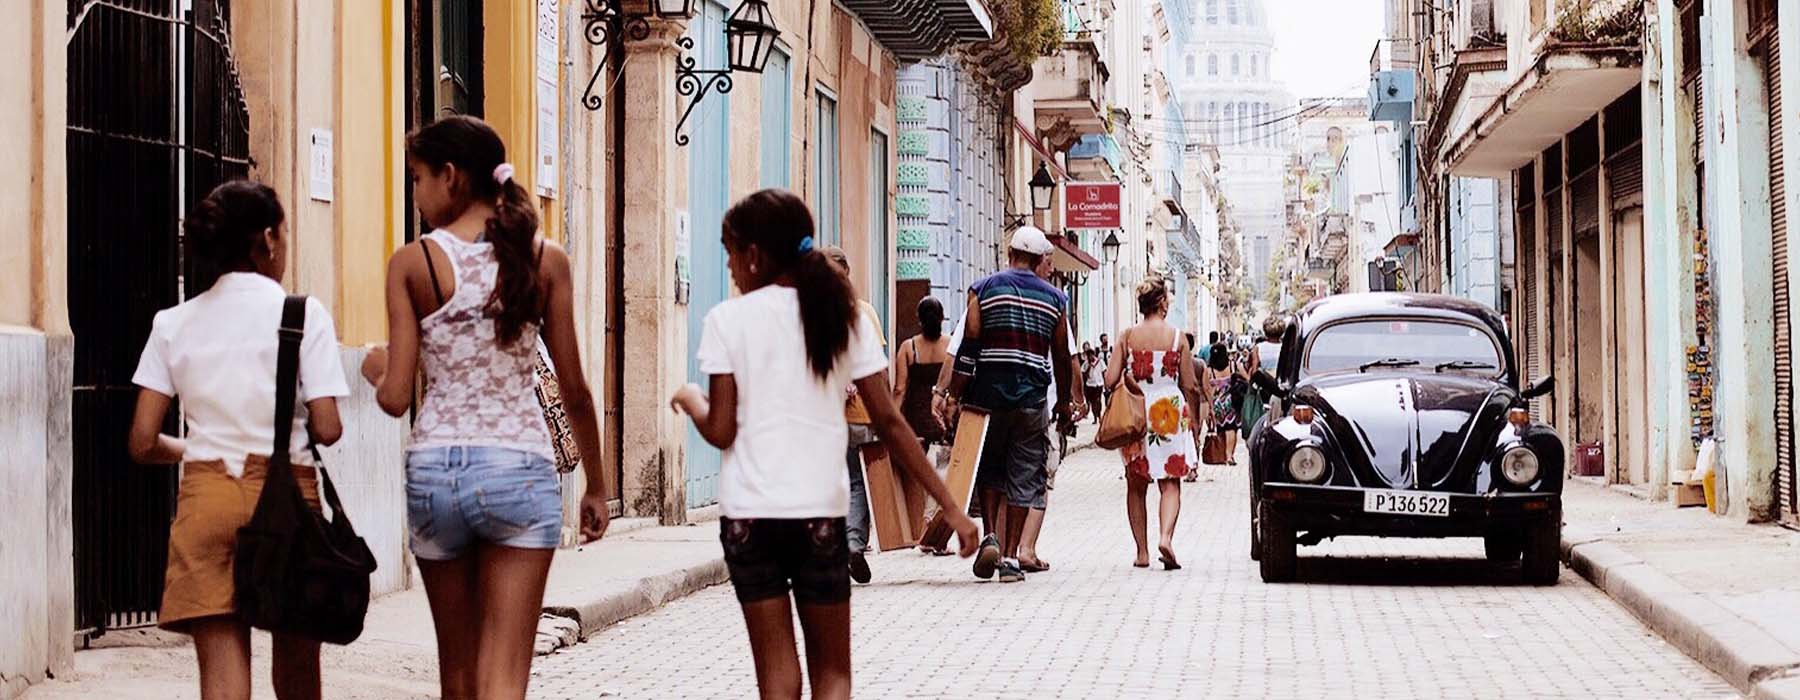 Cuba<br class="hidden-md hidden-lg" /> Luxury Holidays